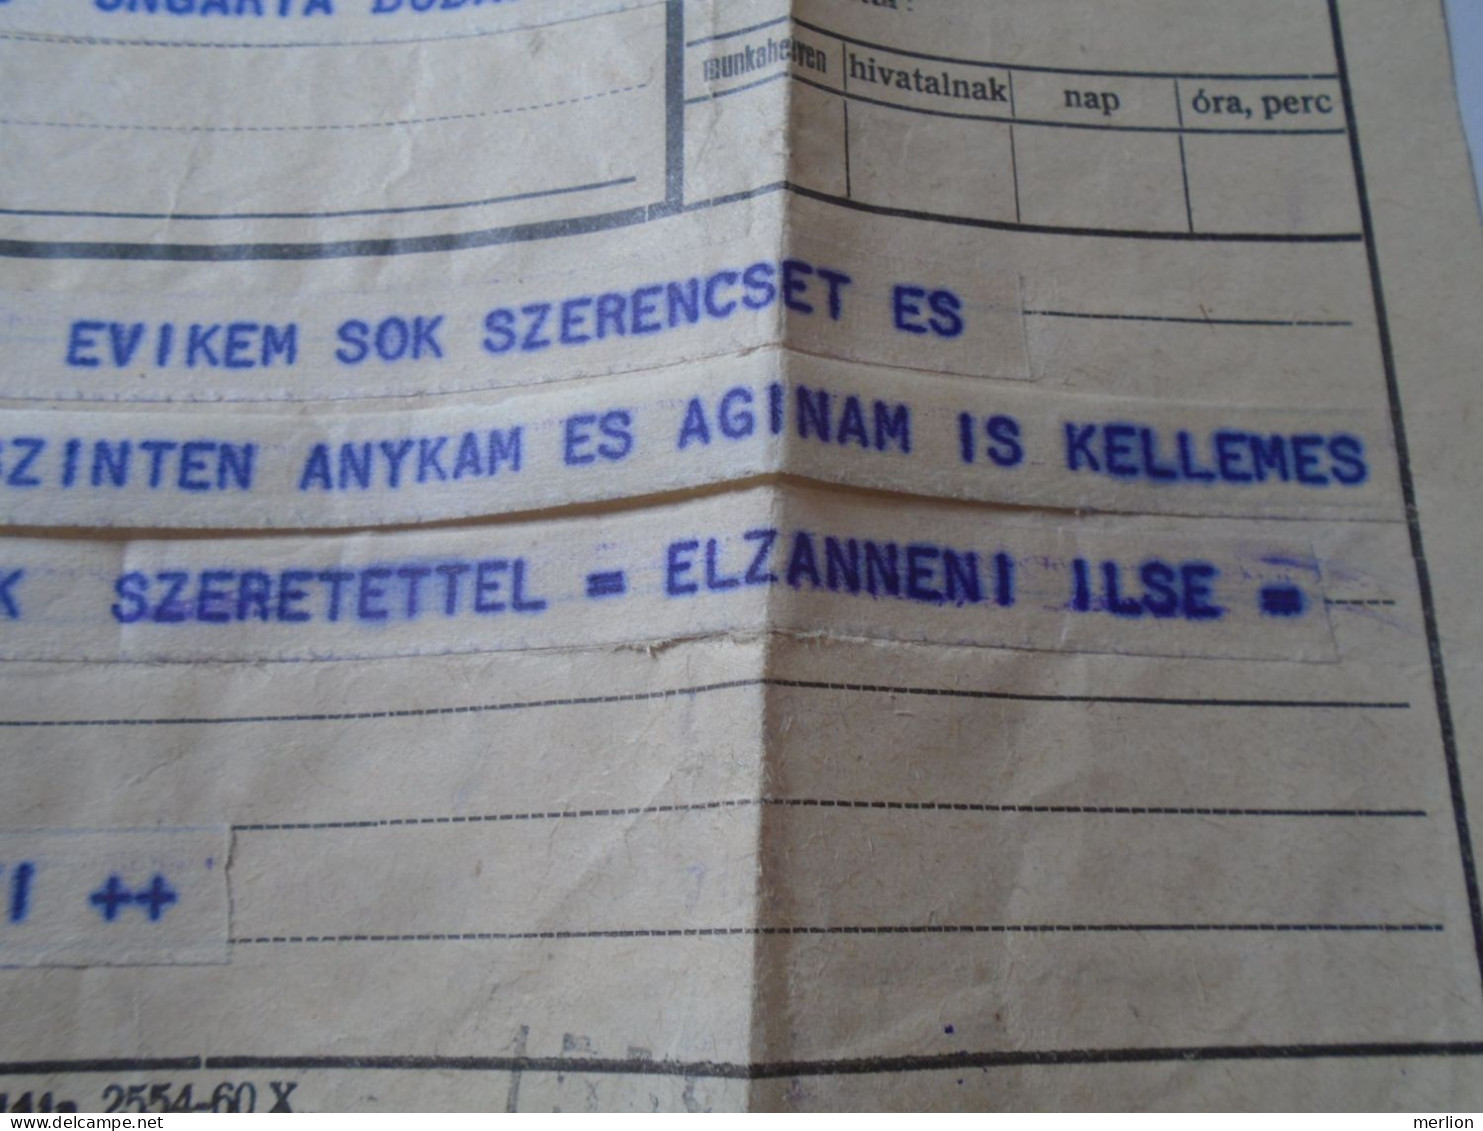 D199203   Hungary  Telegraph Telegram - 1960's   Medias -   - Brenner Budapest - Telegraphenmarken